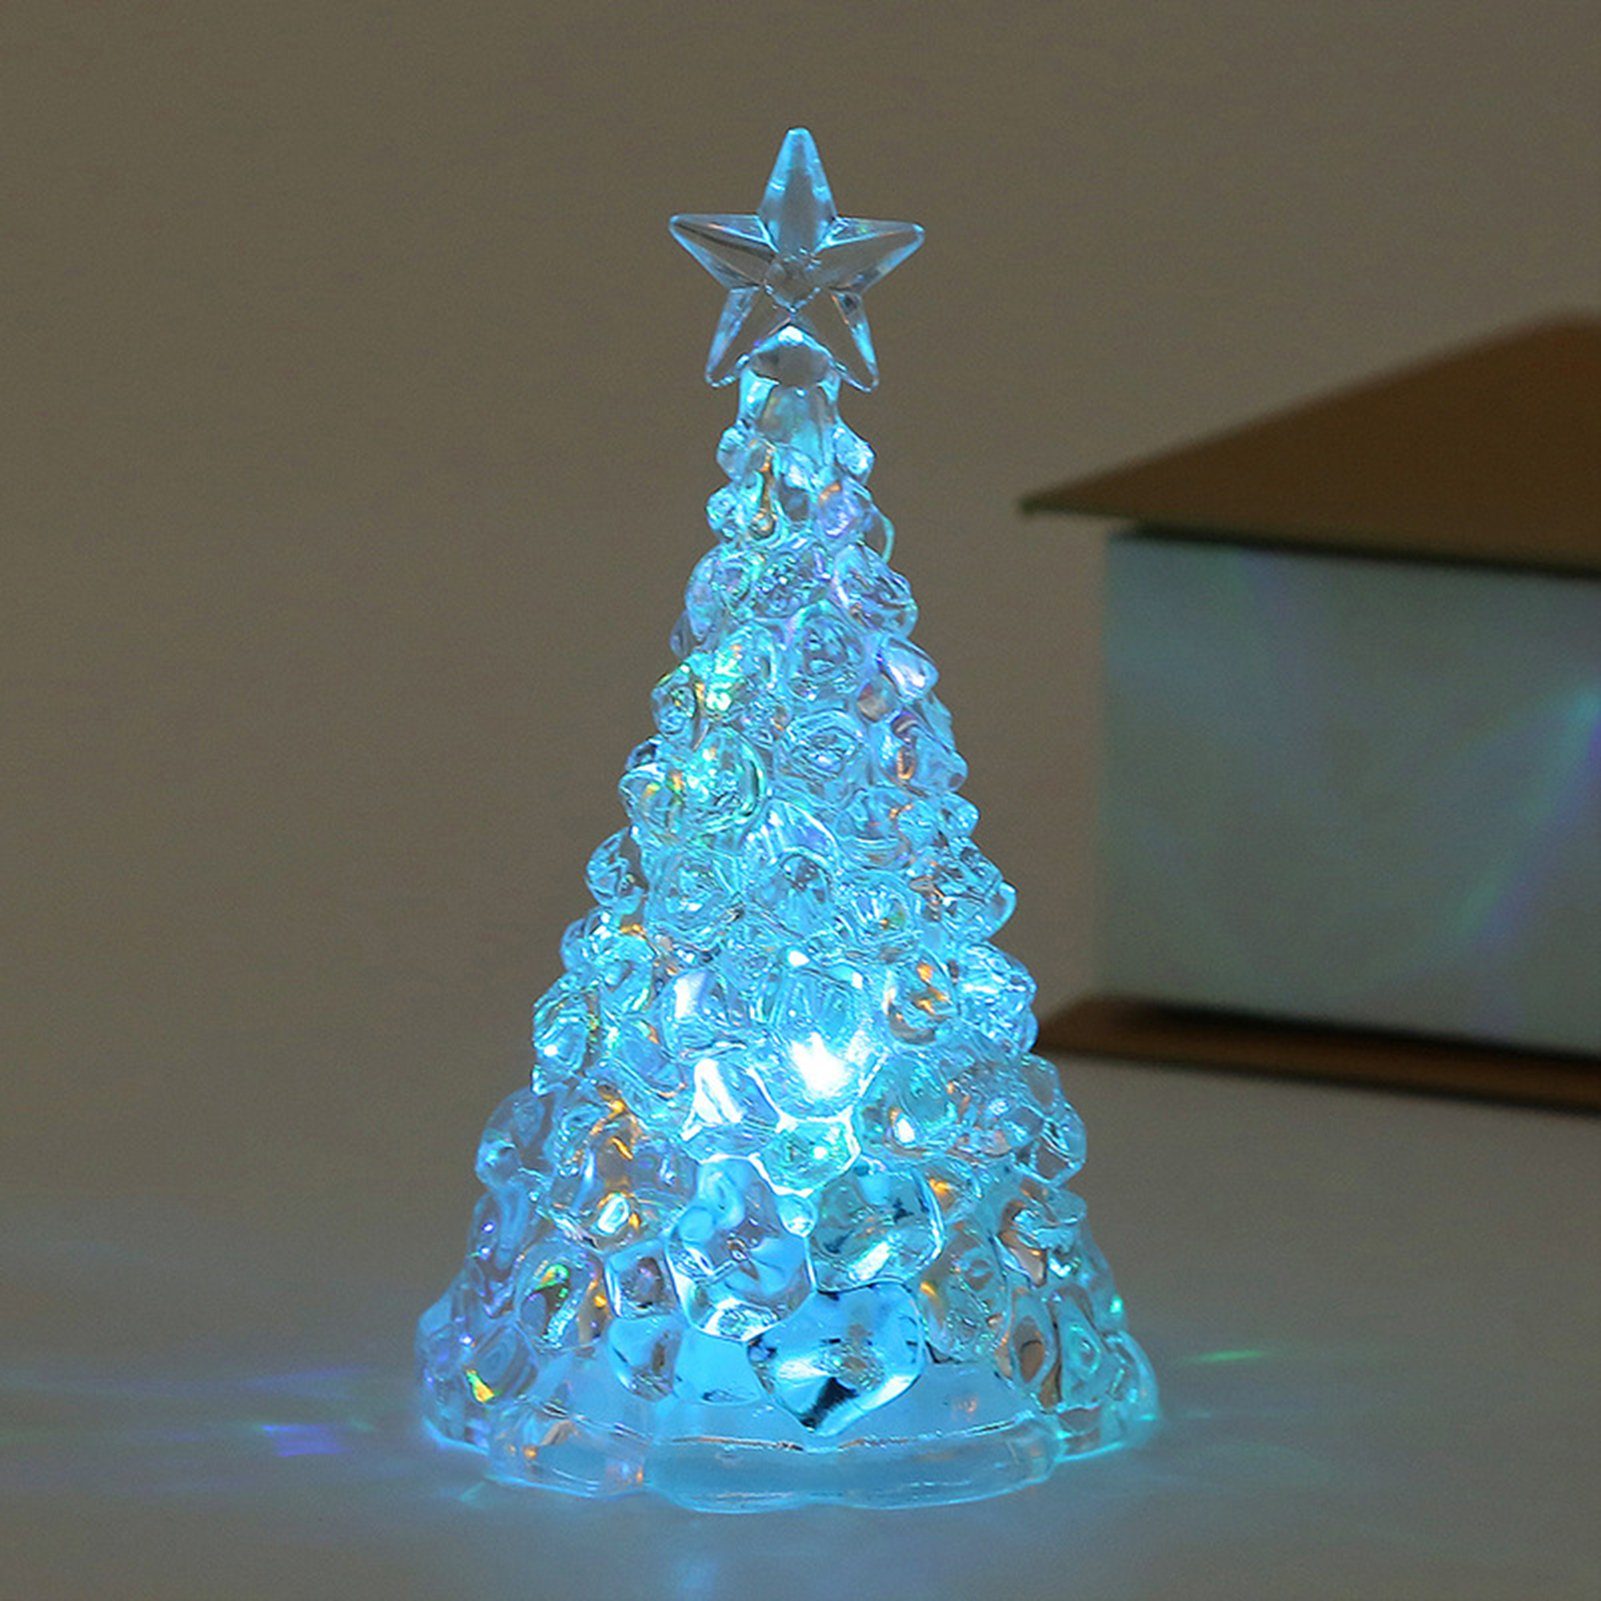 Rutaqian LED Nachtlicht 4 Stück Weihnachtsbaum Nachtlicht Heiligabend Geschenk LED Kerzenlicht, Weihnachtsdekorationen Desktop Ornament Kristall Nachtlicht Blau